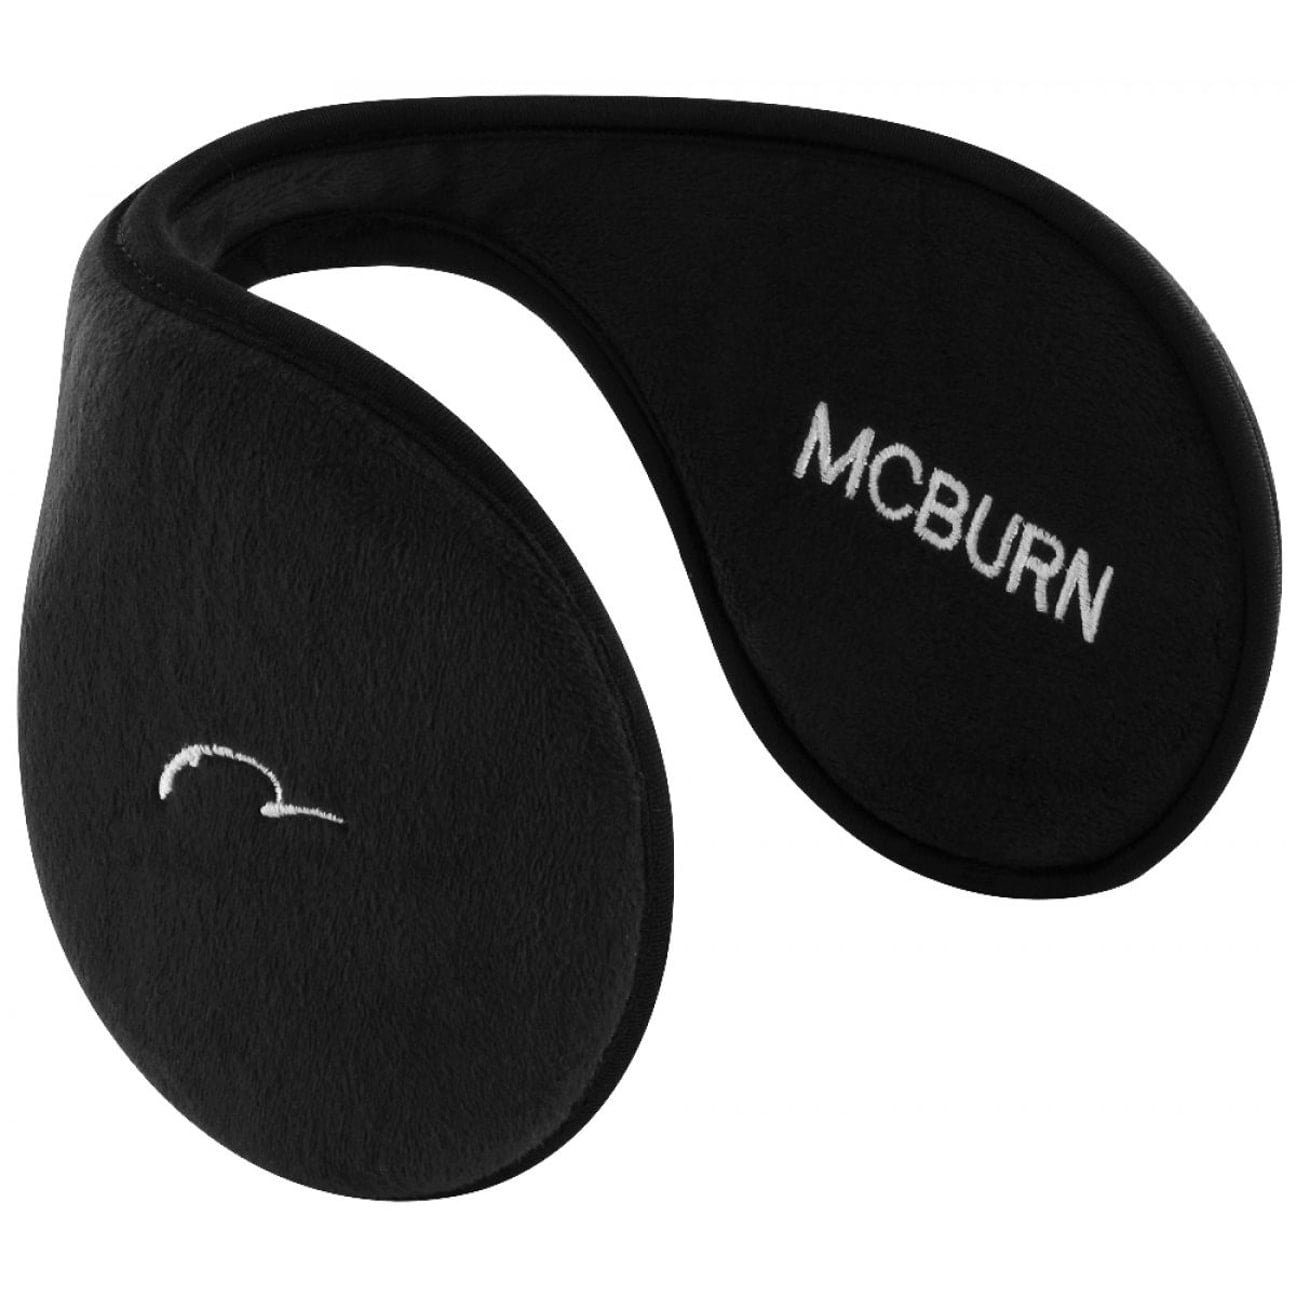 (1-St) schwarz Ohrenschützer McBurn Ohrenwärmer